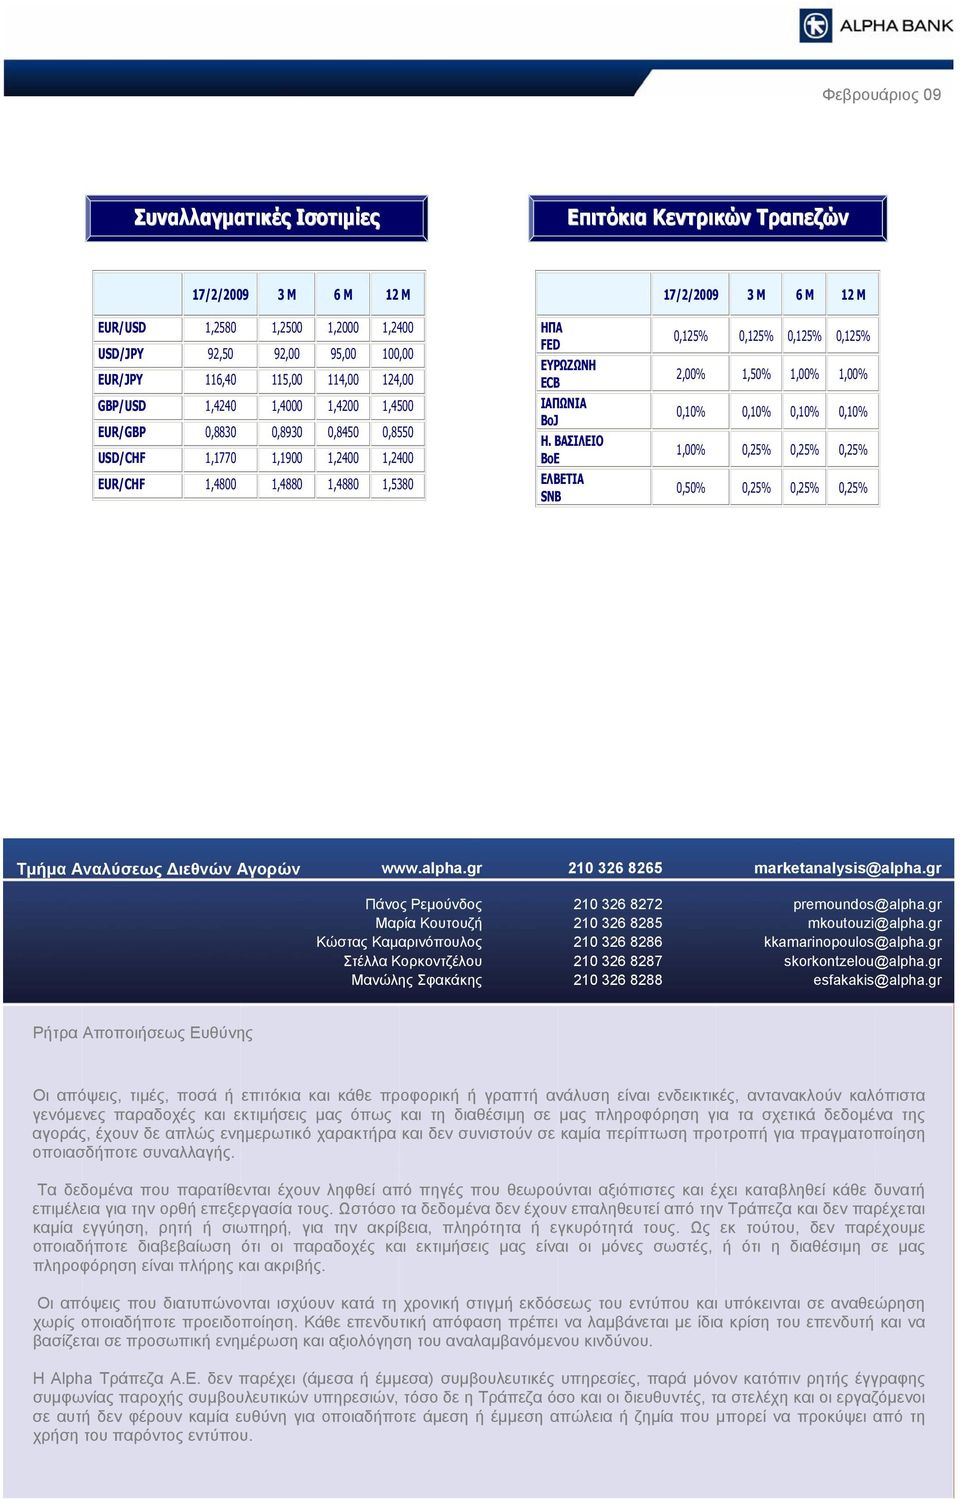 ΒΑΣΙΛΕΙΟ BoE ΕΛΒΕΤΙΑ SNB,25%,25%,25%,25% 2,%,5%,%,%,%,%,%,%,%,25%,25%,25%,5%,25%,25%,25% Τμήμα Αναλύσεως Διεθνών Αγορών www.alpha.gr 2 326 8265 marketanalysis@alpha.